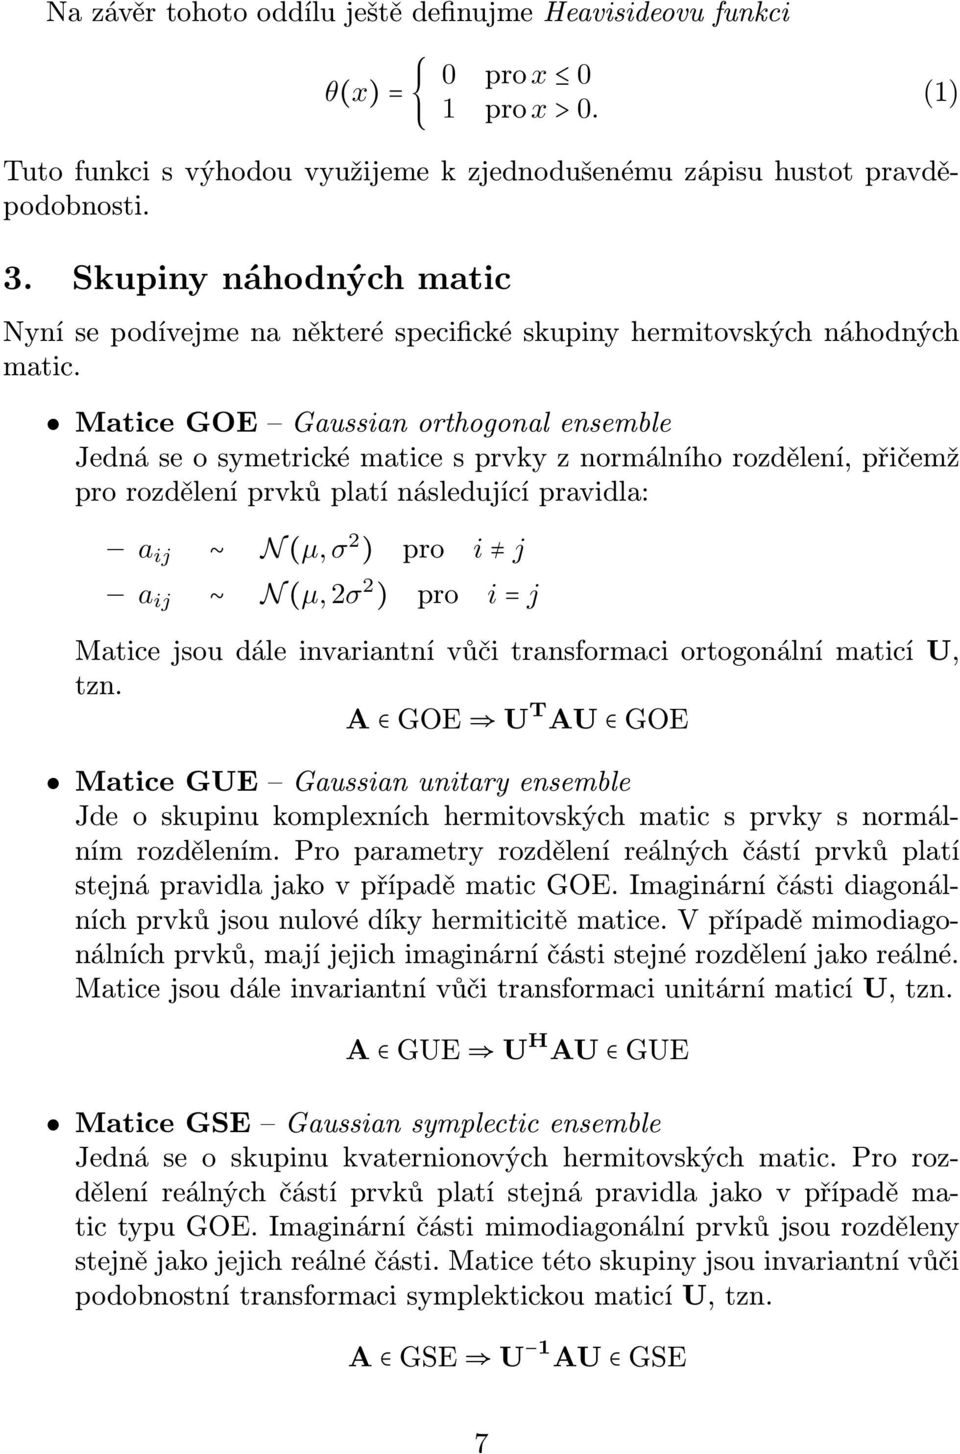 Matice GOE Gaussian orthogonal ensemble Jedná se o symetrické matice s prvky z normálního rozdělení, přičemž pro rozdělení prvků platí následující pravidla: a ij N (µ, σ 2 ) pro i j a ij N (µ, 2σ 2 )